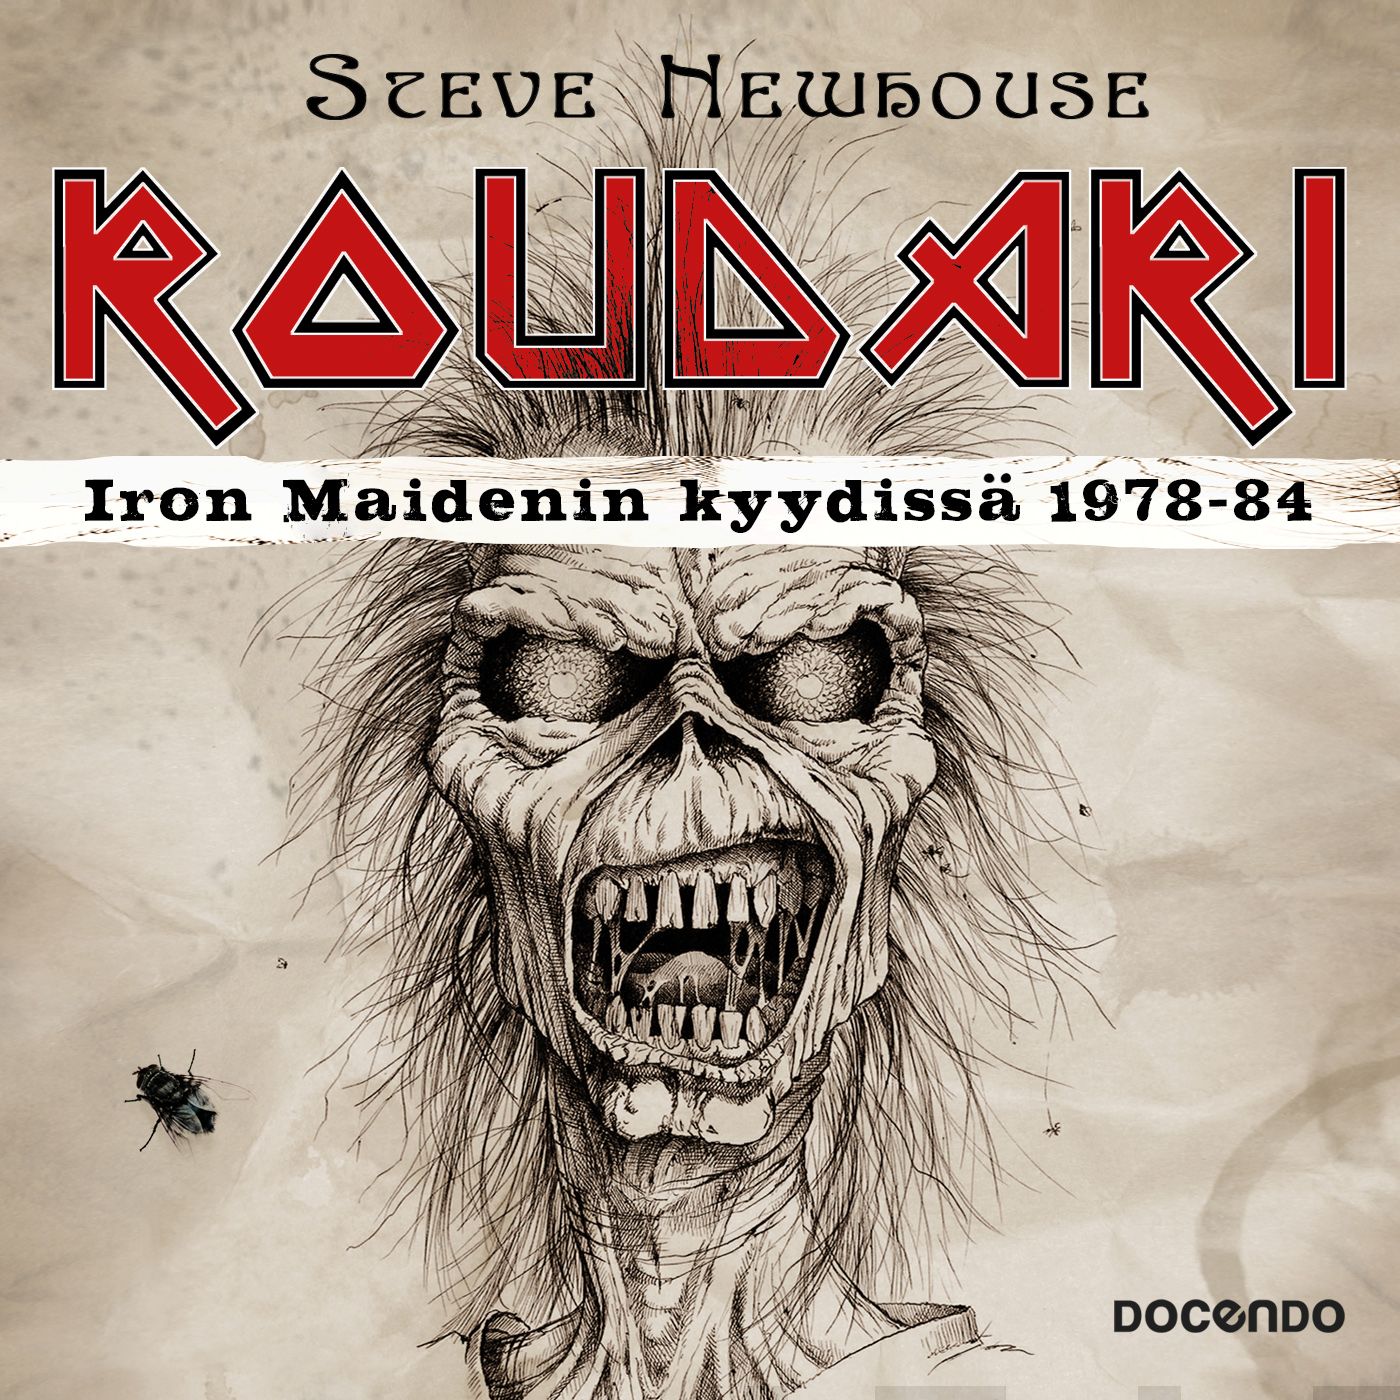 Newhouse, Steve - Roudari: Iron Maidenin kyydissä 1978-84, äänikirja